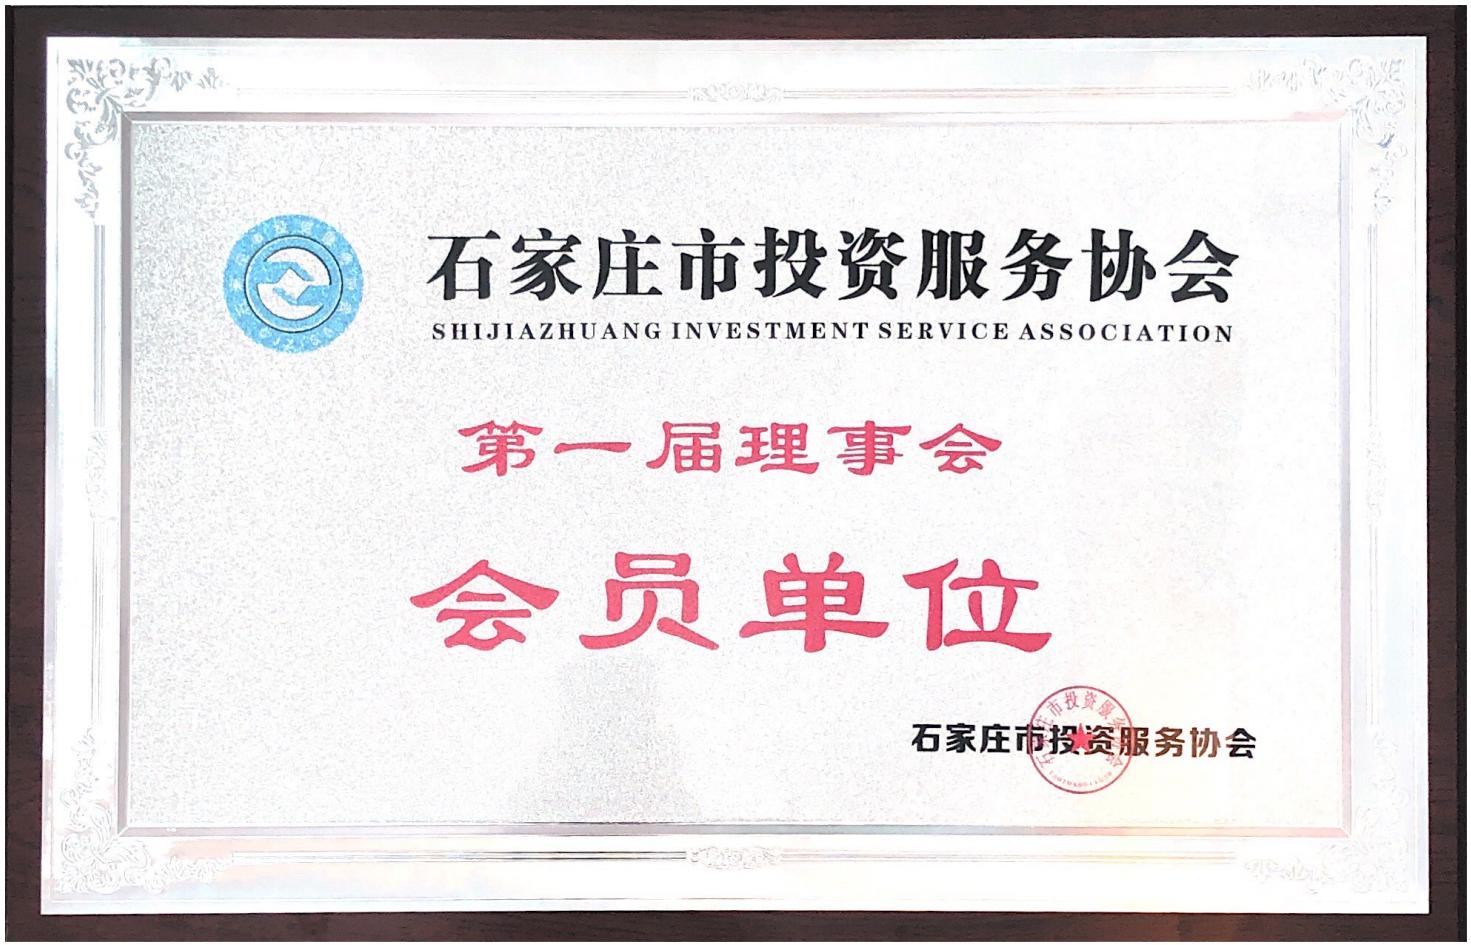 Mitglied des Zertifikats der Investment Service Association